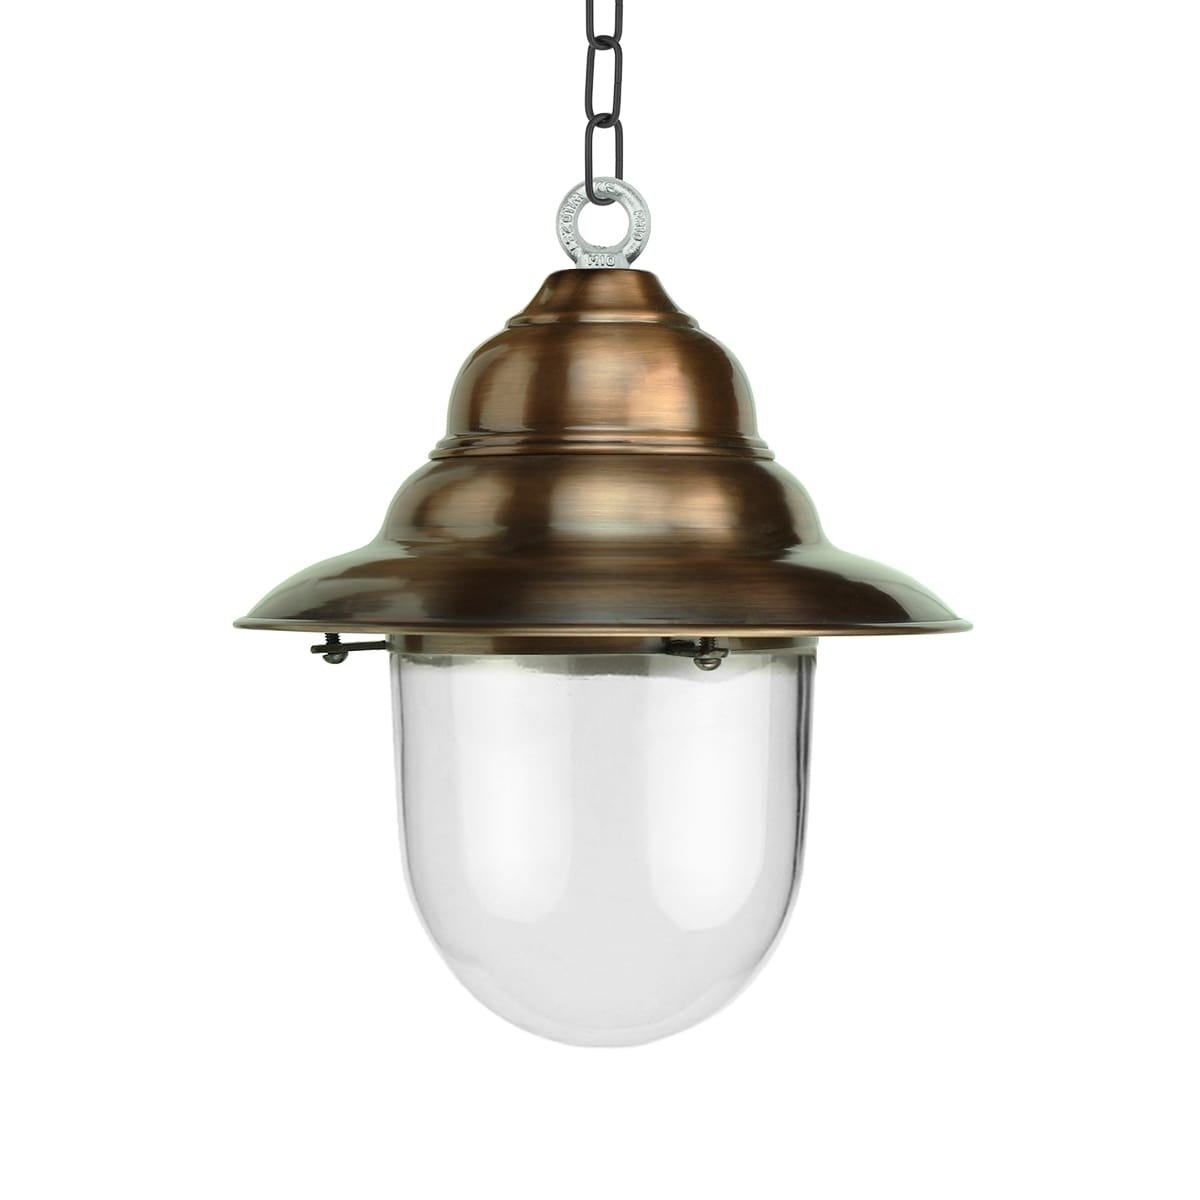 Hængelampe rustik Archem kobber - 35 cm